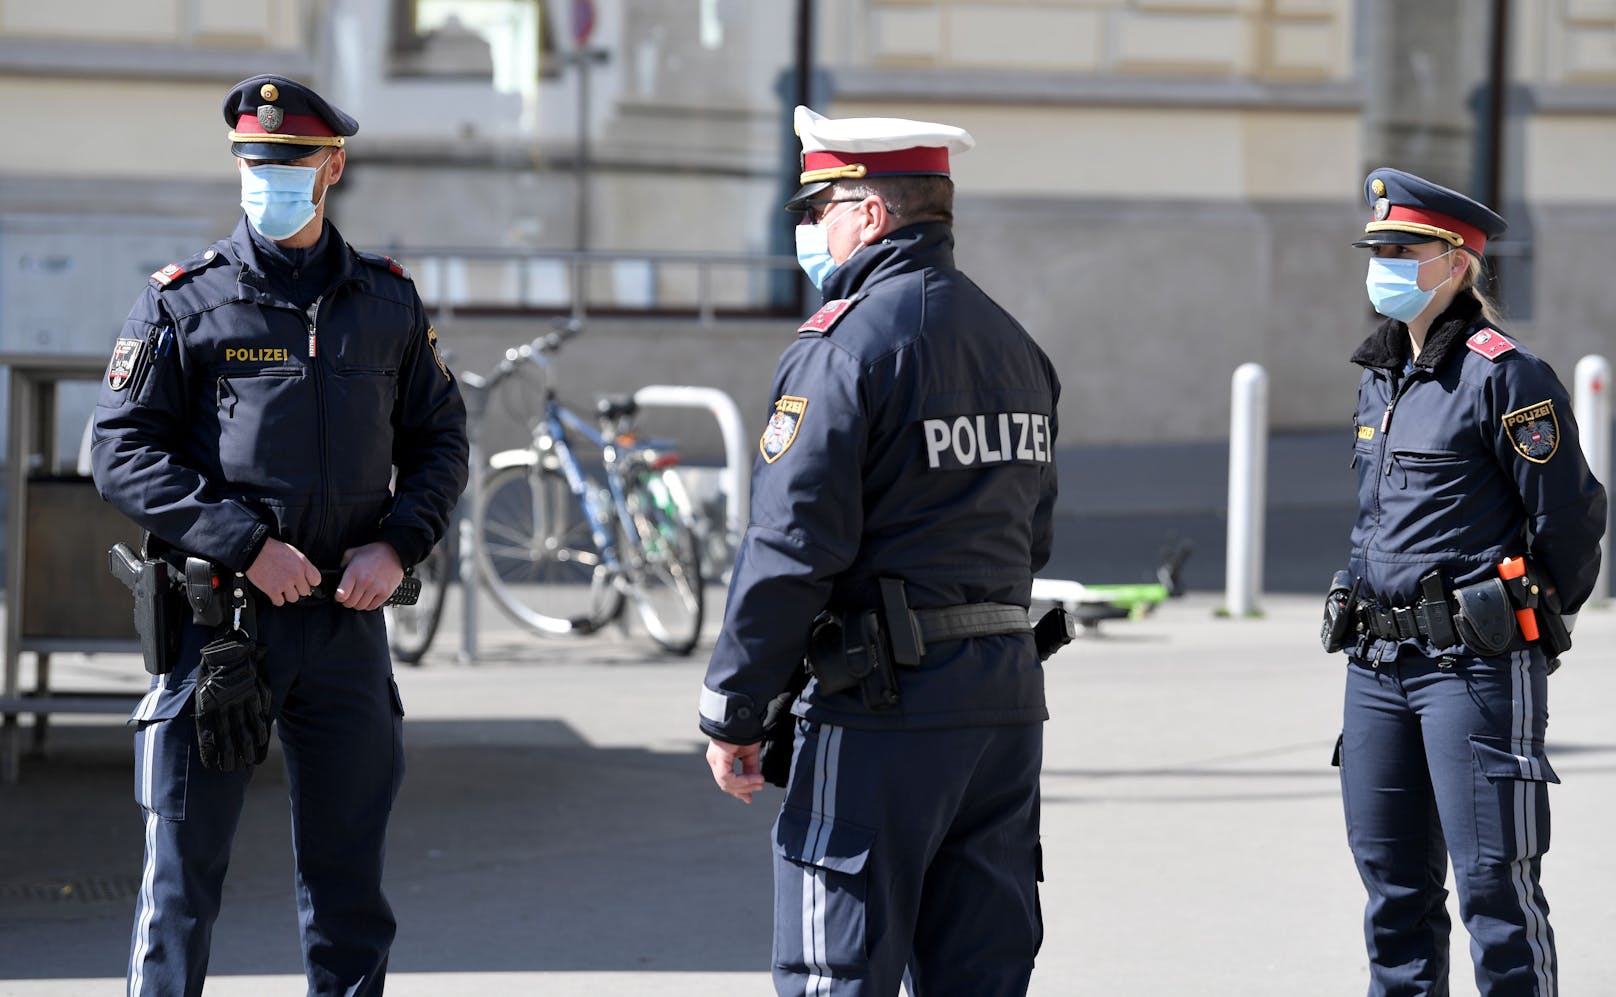 Polizei mit Mund- und Nasenschutz auf Streife in der Wiener Innenstadt.